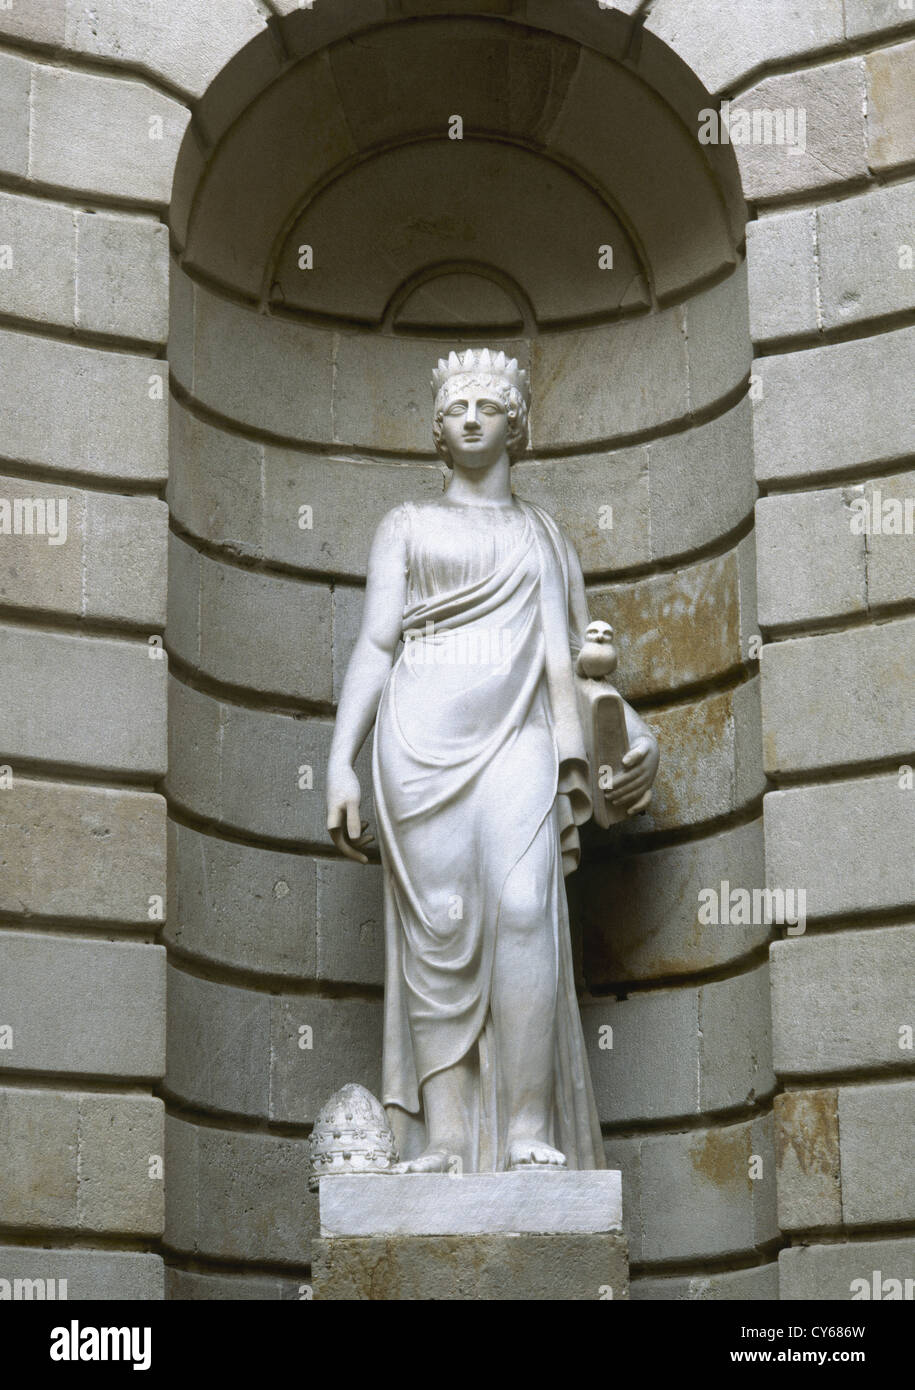 Spanien. Katalonien. Barcelona. Statue an der Llotja, die Europa repräsentiert. Erstellt von Manuel Oliver. Neo-Klassizismus. Stockfoto